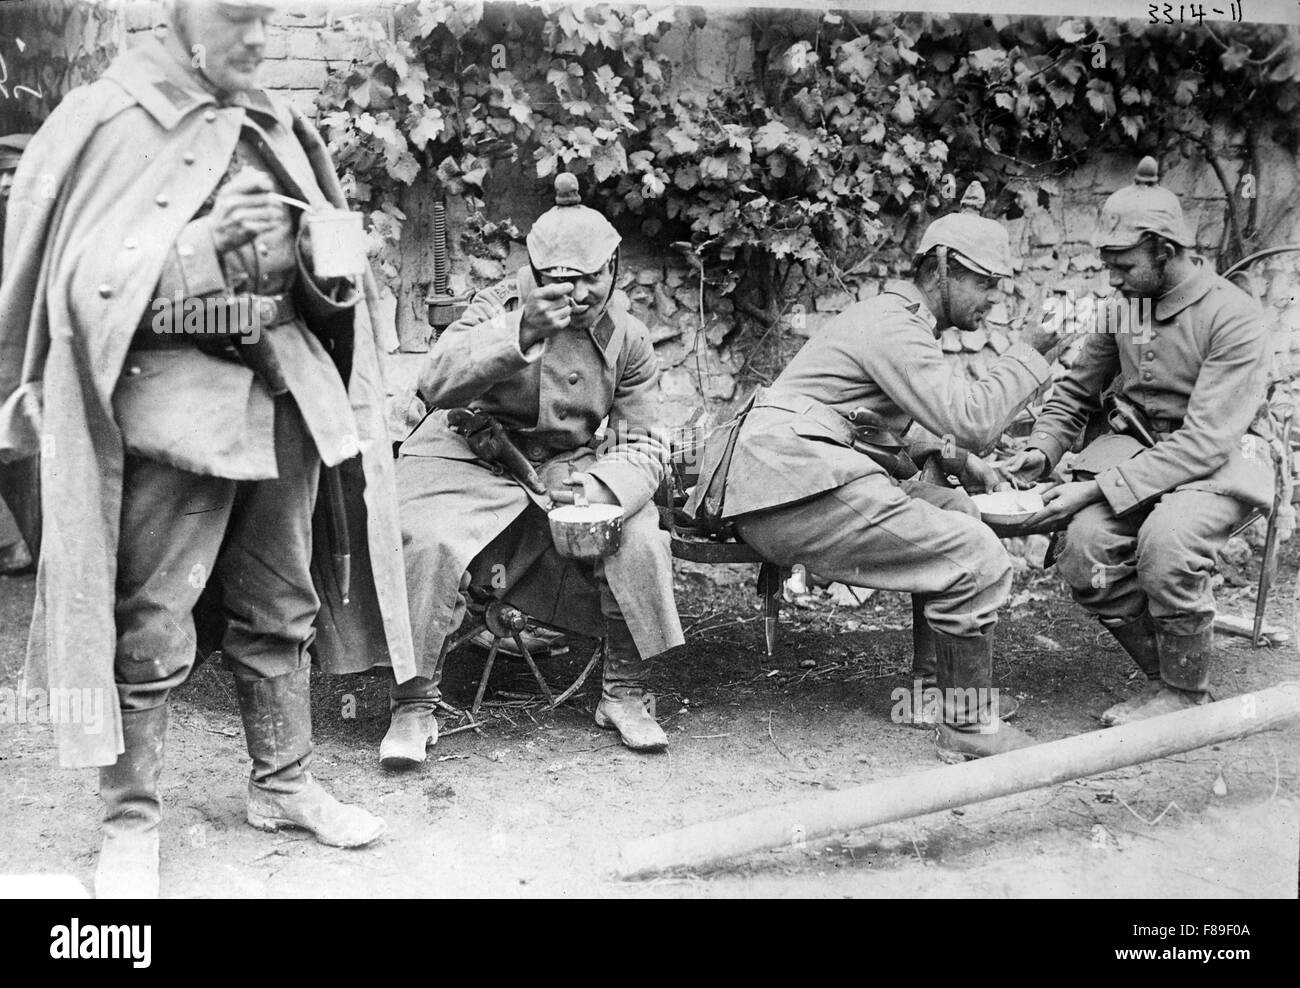 Les soldats allemands pendant la Première Guerre mondiale, Verdun, France Banque D'Images